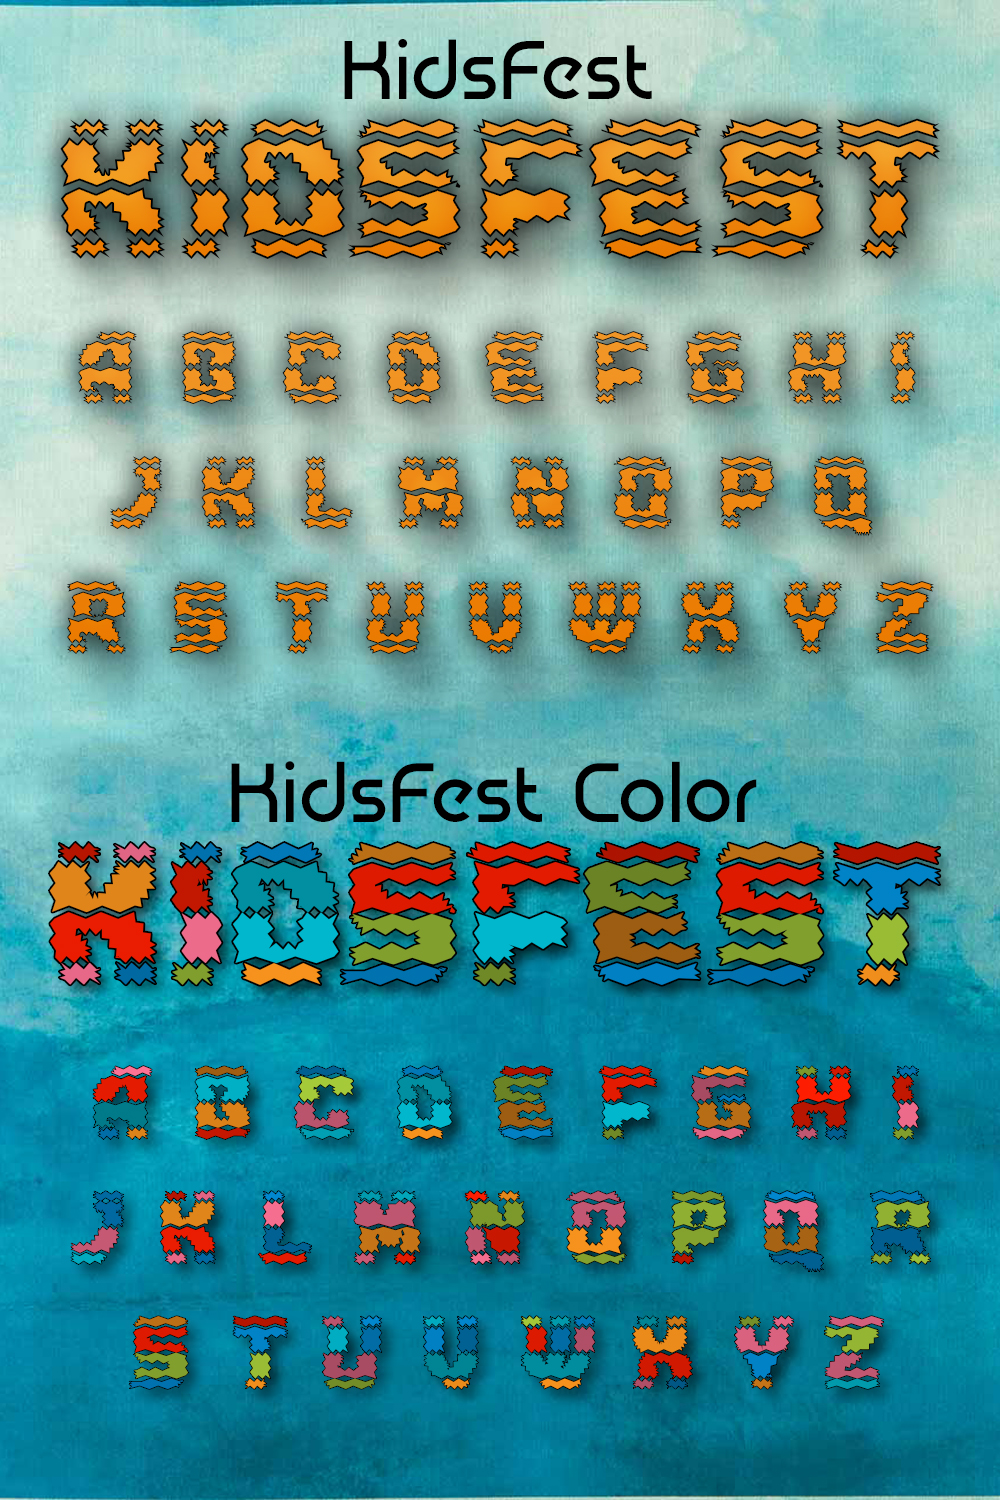 Kidsfest font of pinterest.